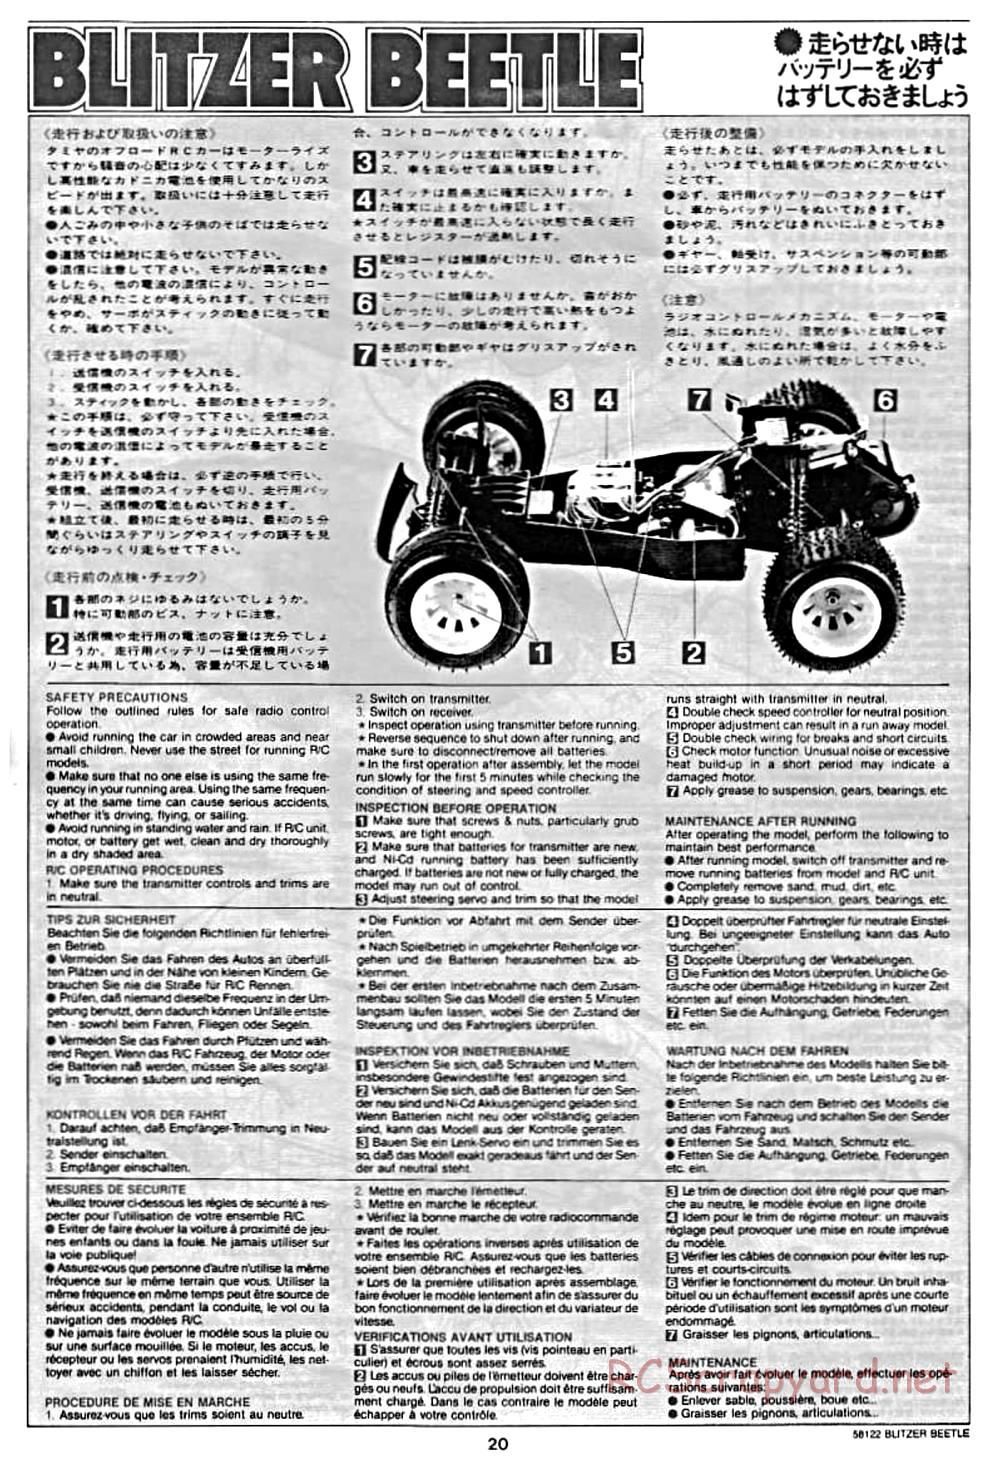 Tamiya - Blitzer Beetle Chassis - Manual - Page 20